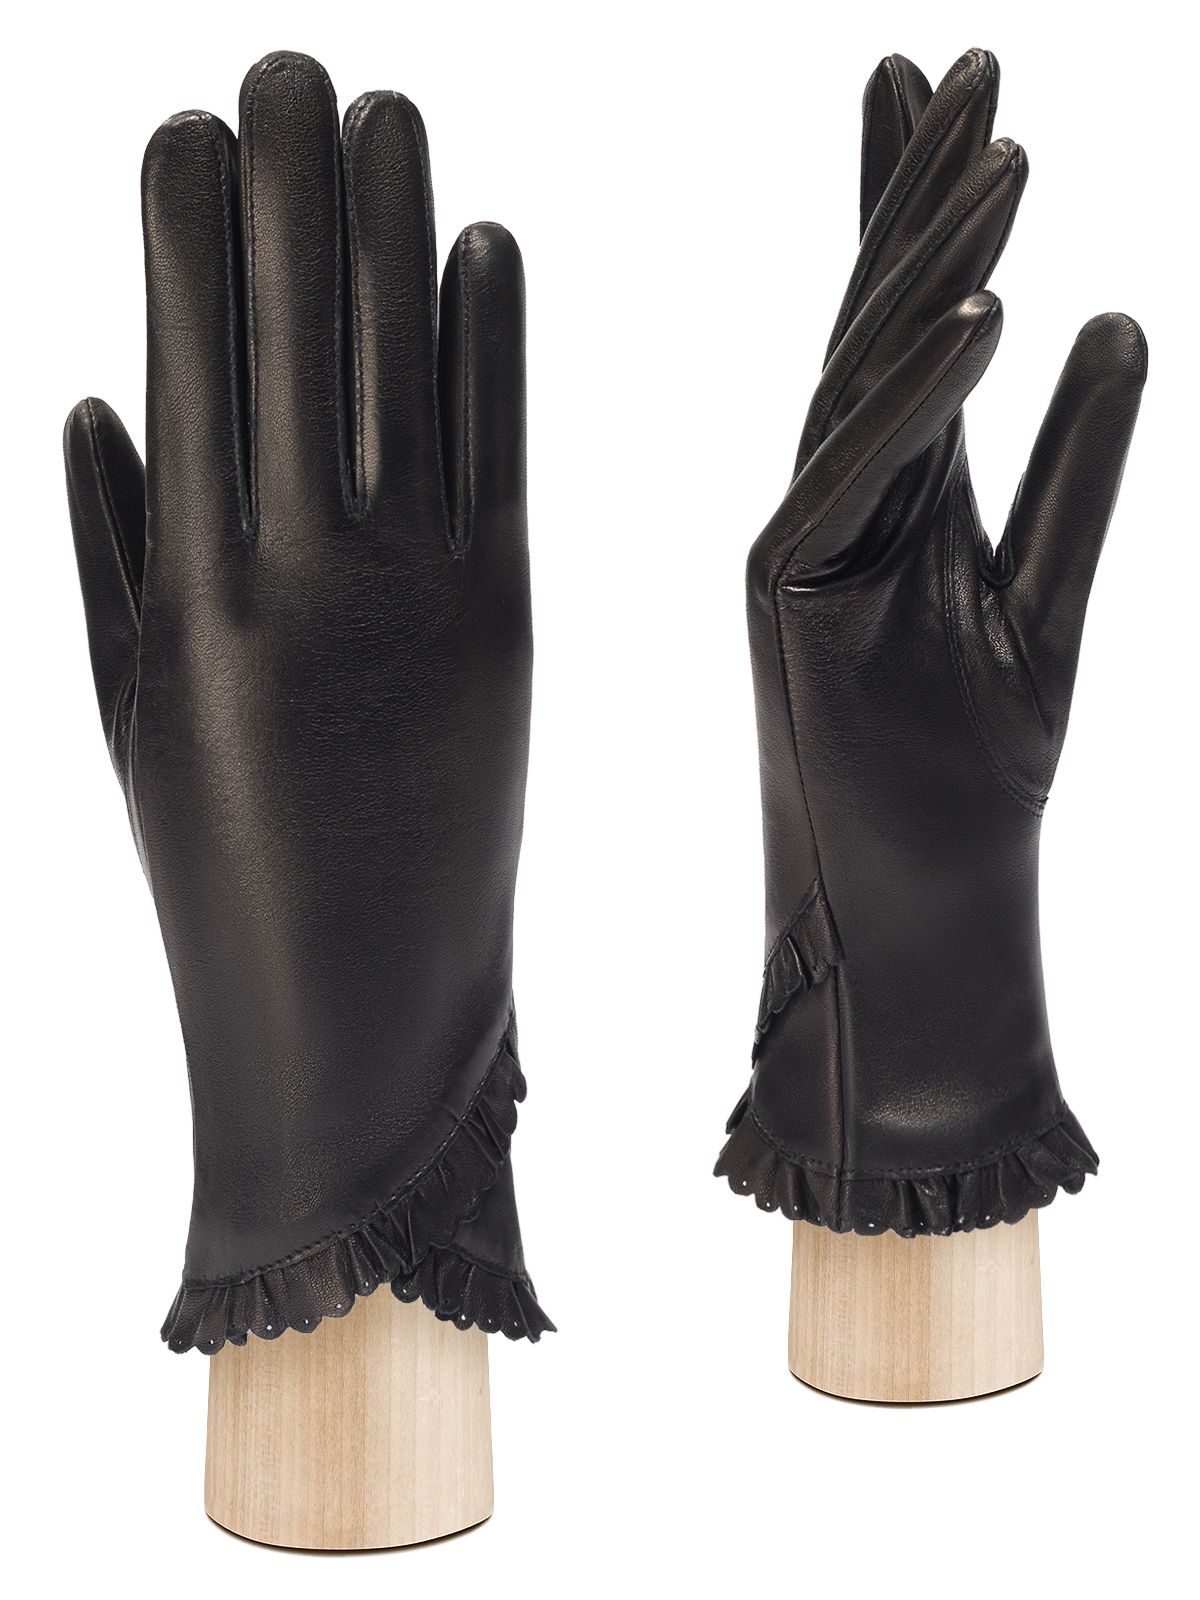 Перчатки женские Eleganzza IS803 черные р. M